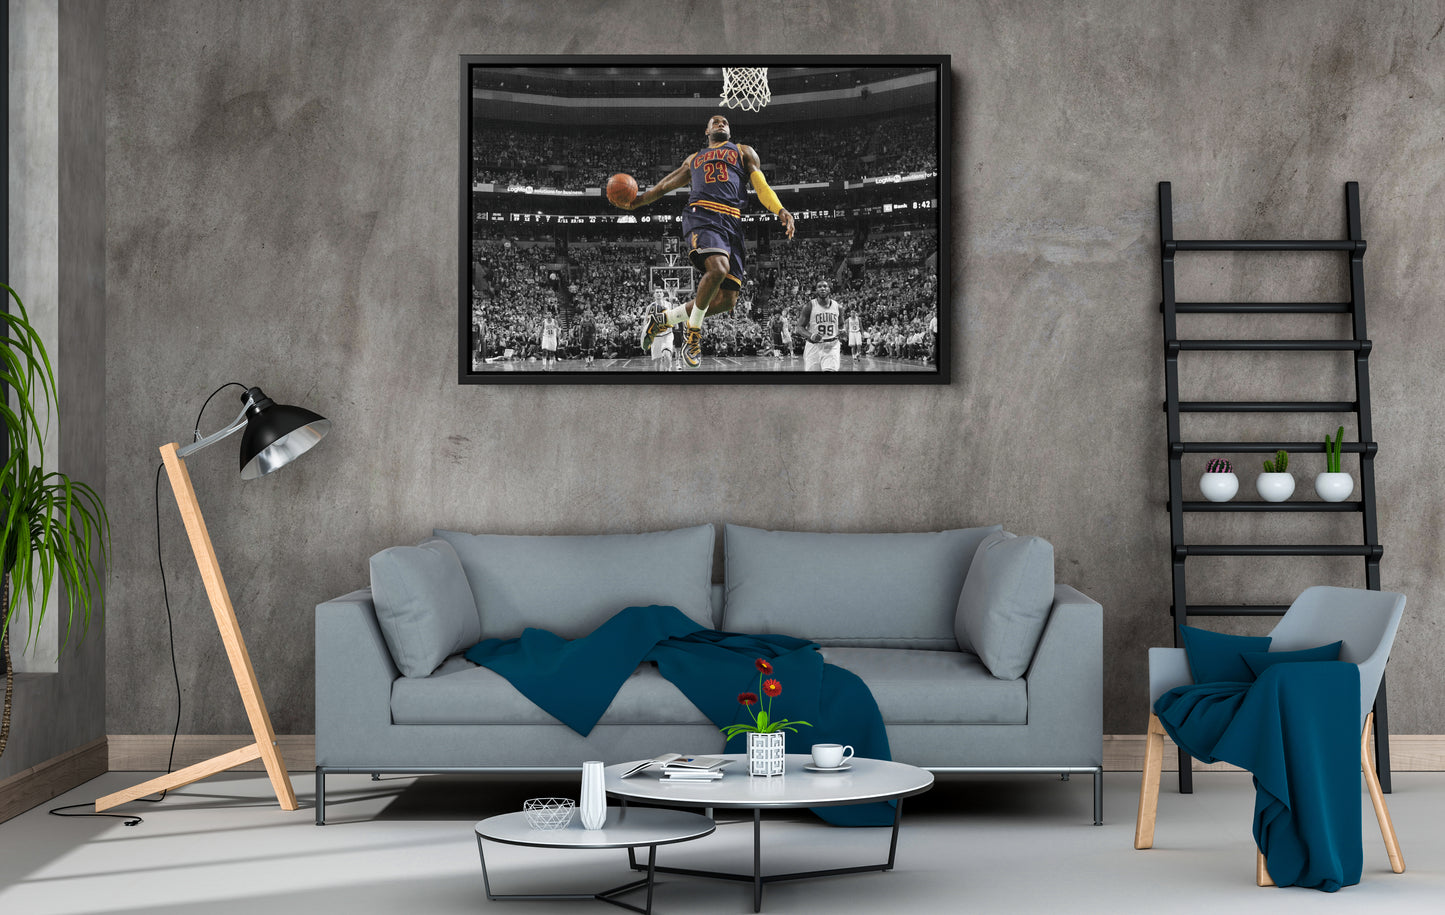 LeBron James Poster Basketball Art Effect Wall Art Home Decor Framed Art